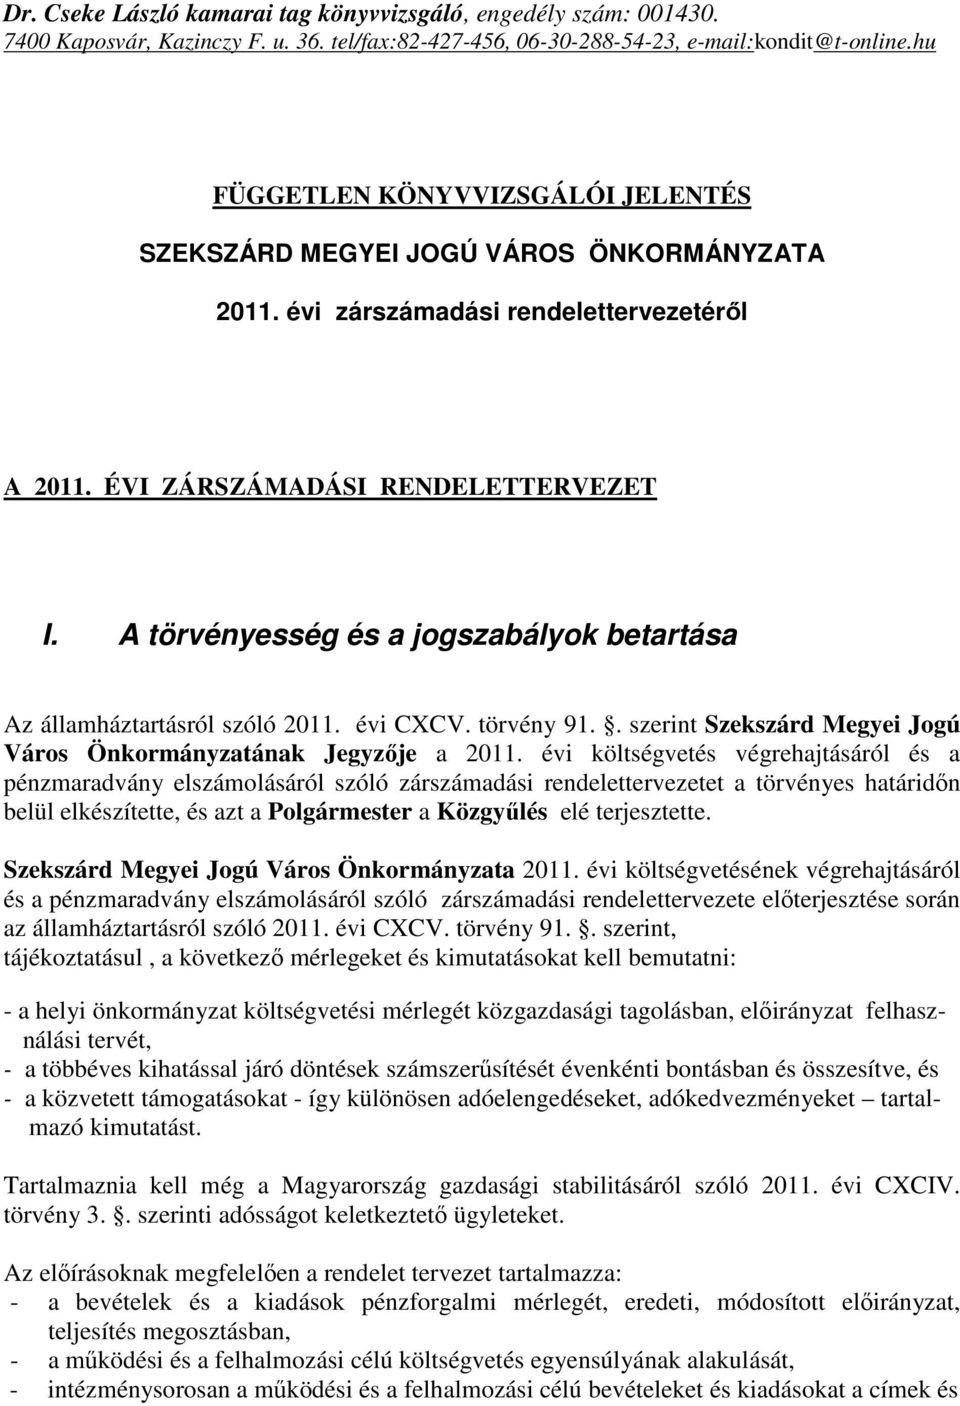 A törvényesség és a jogszabályok betartása Az államháztartásról szóló 2011. évi CXCV. törvény 91.. szerint Szekszárd Megyei Jogú Város Önkormányzatának Jegyzıje a 2011.